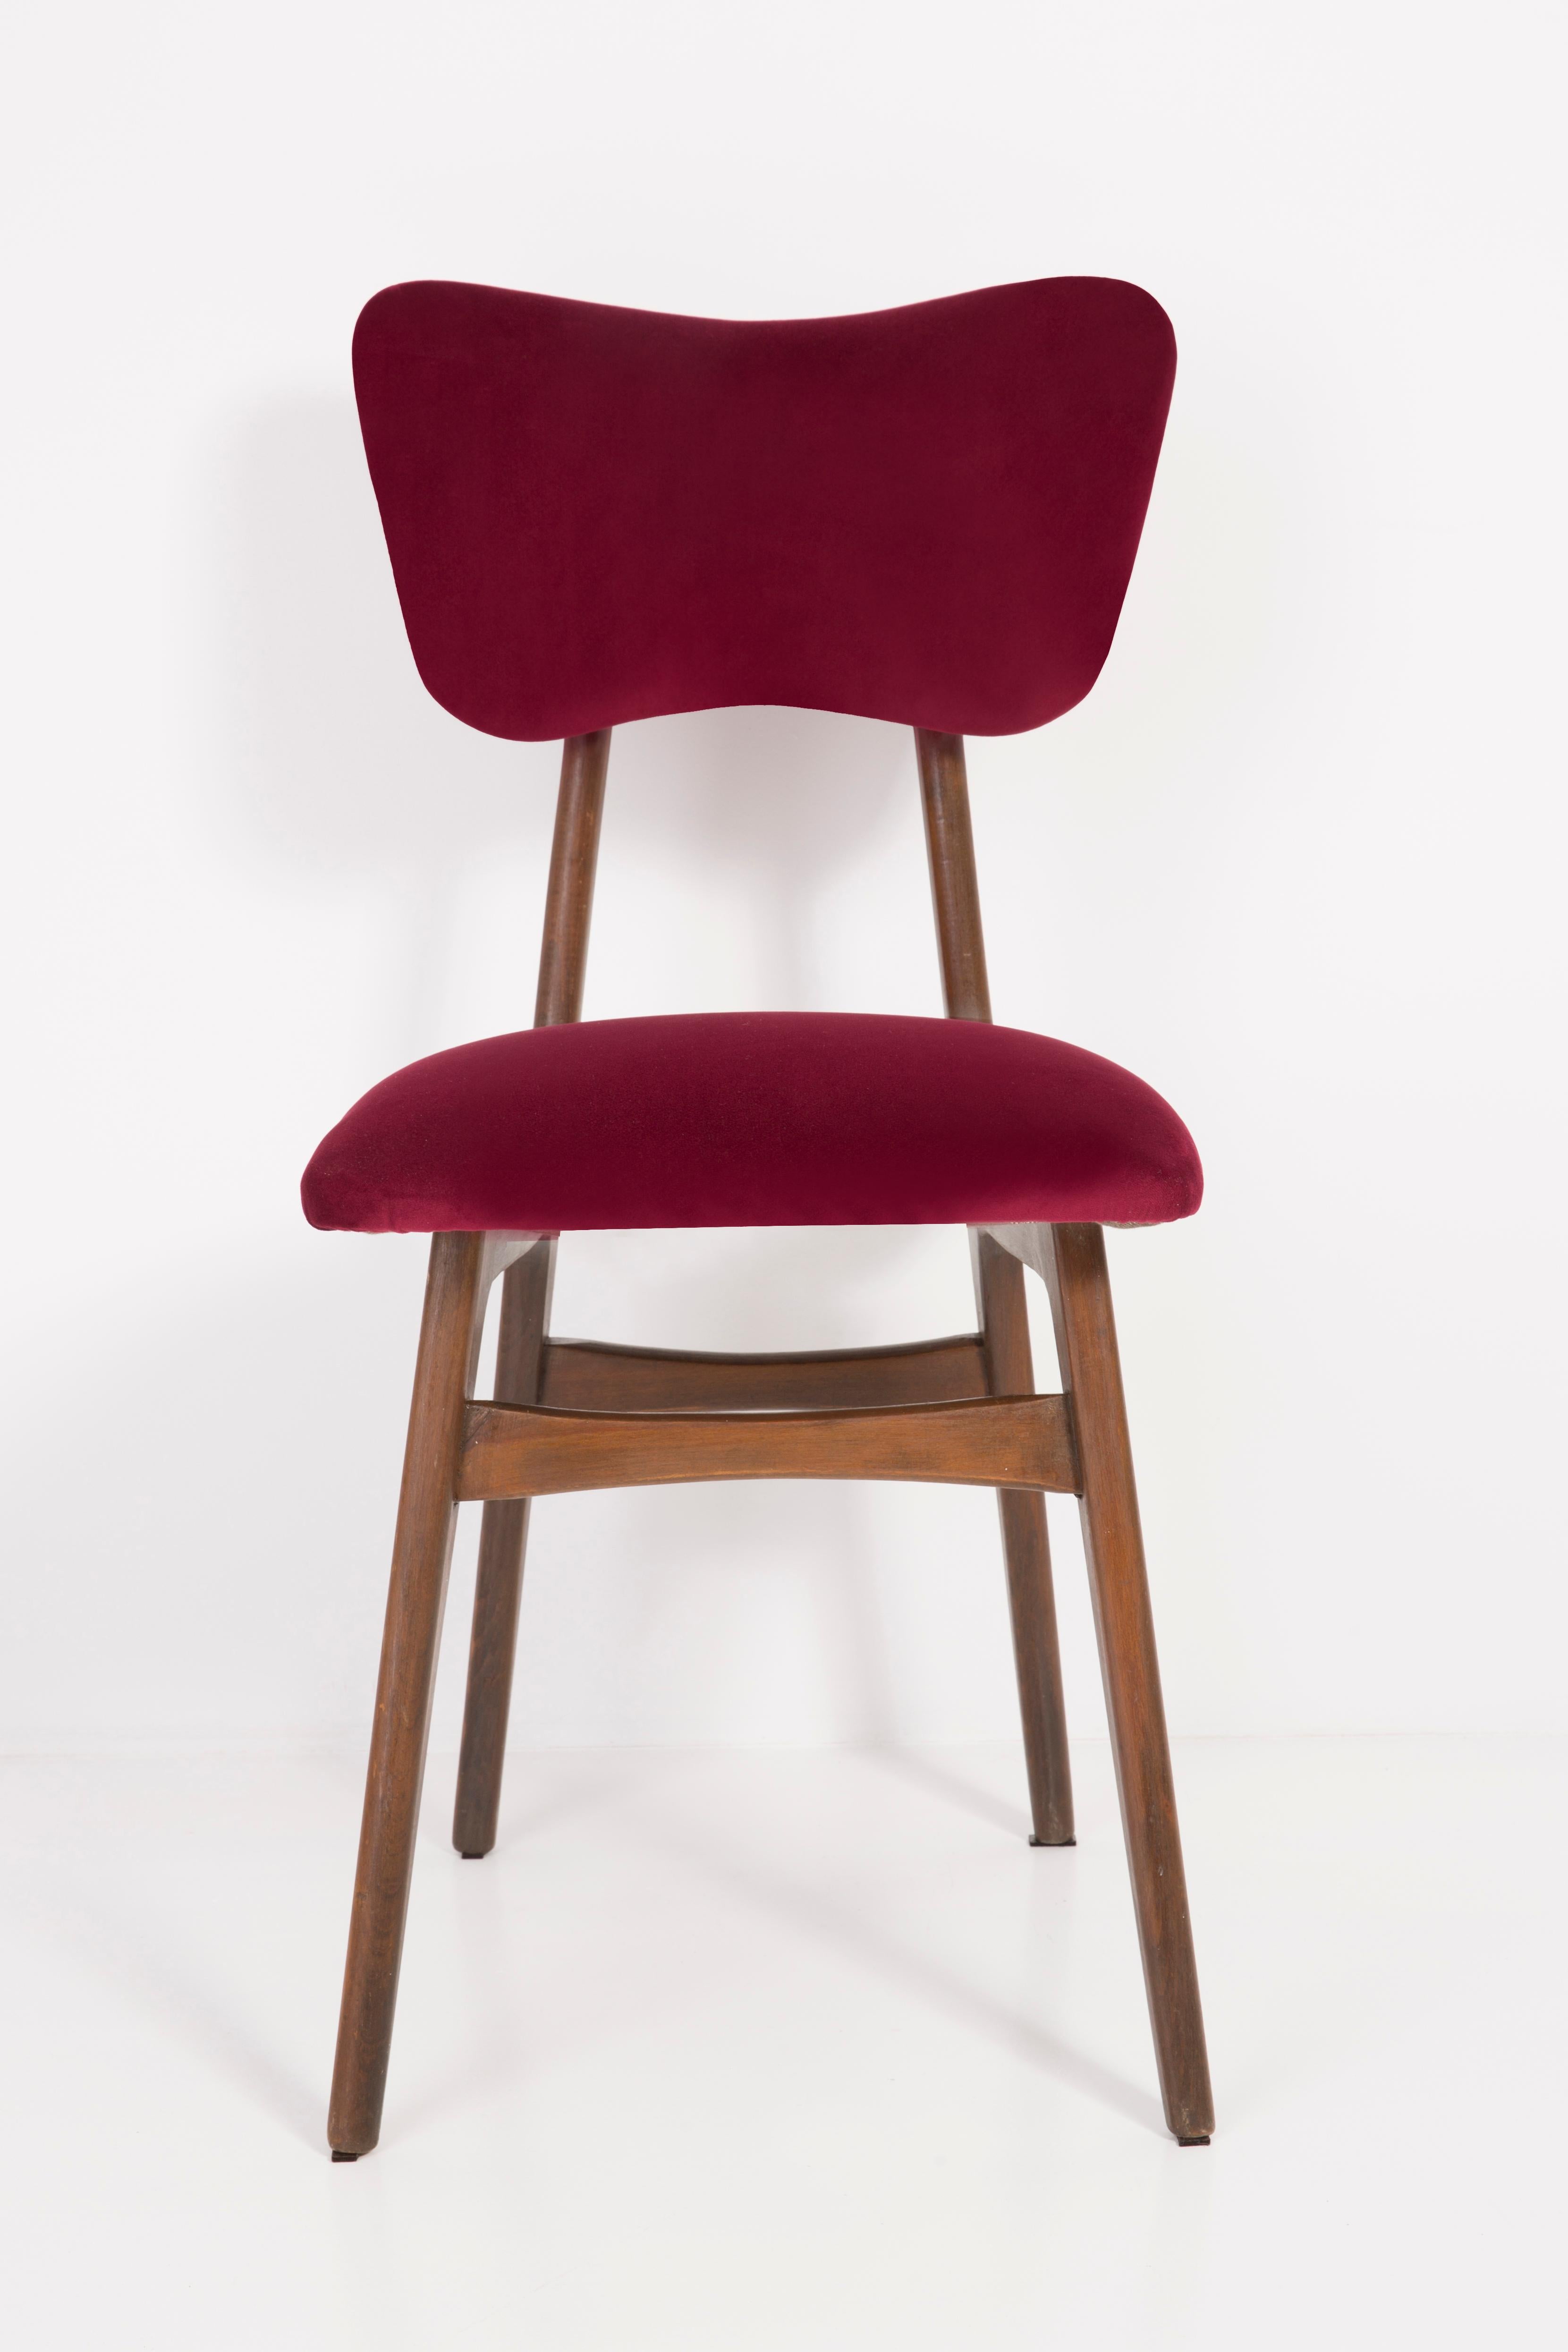 Chaises conçues par le professeur Rajmund Halas. Fabriqué en bois de hêtre. Le fauteuil a subi une rénovation complète de la tapisserie et les boiseries ont été rafraîchies. L'assise et le dossier sont habillés d'un tissu en velours rouge bordeaux,